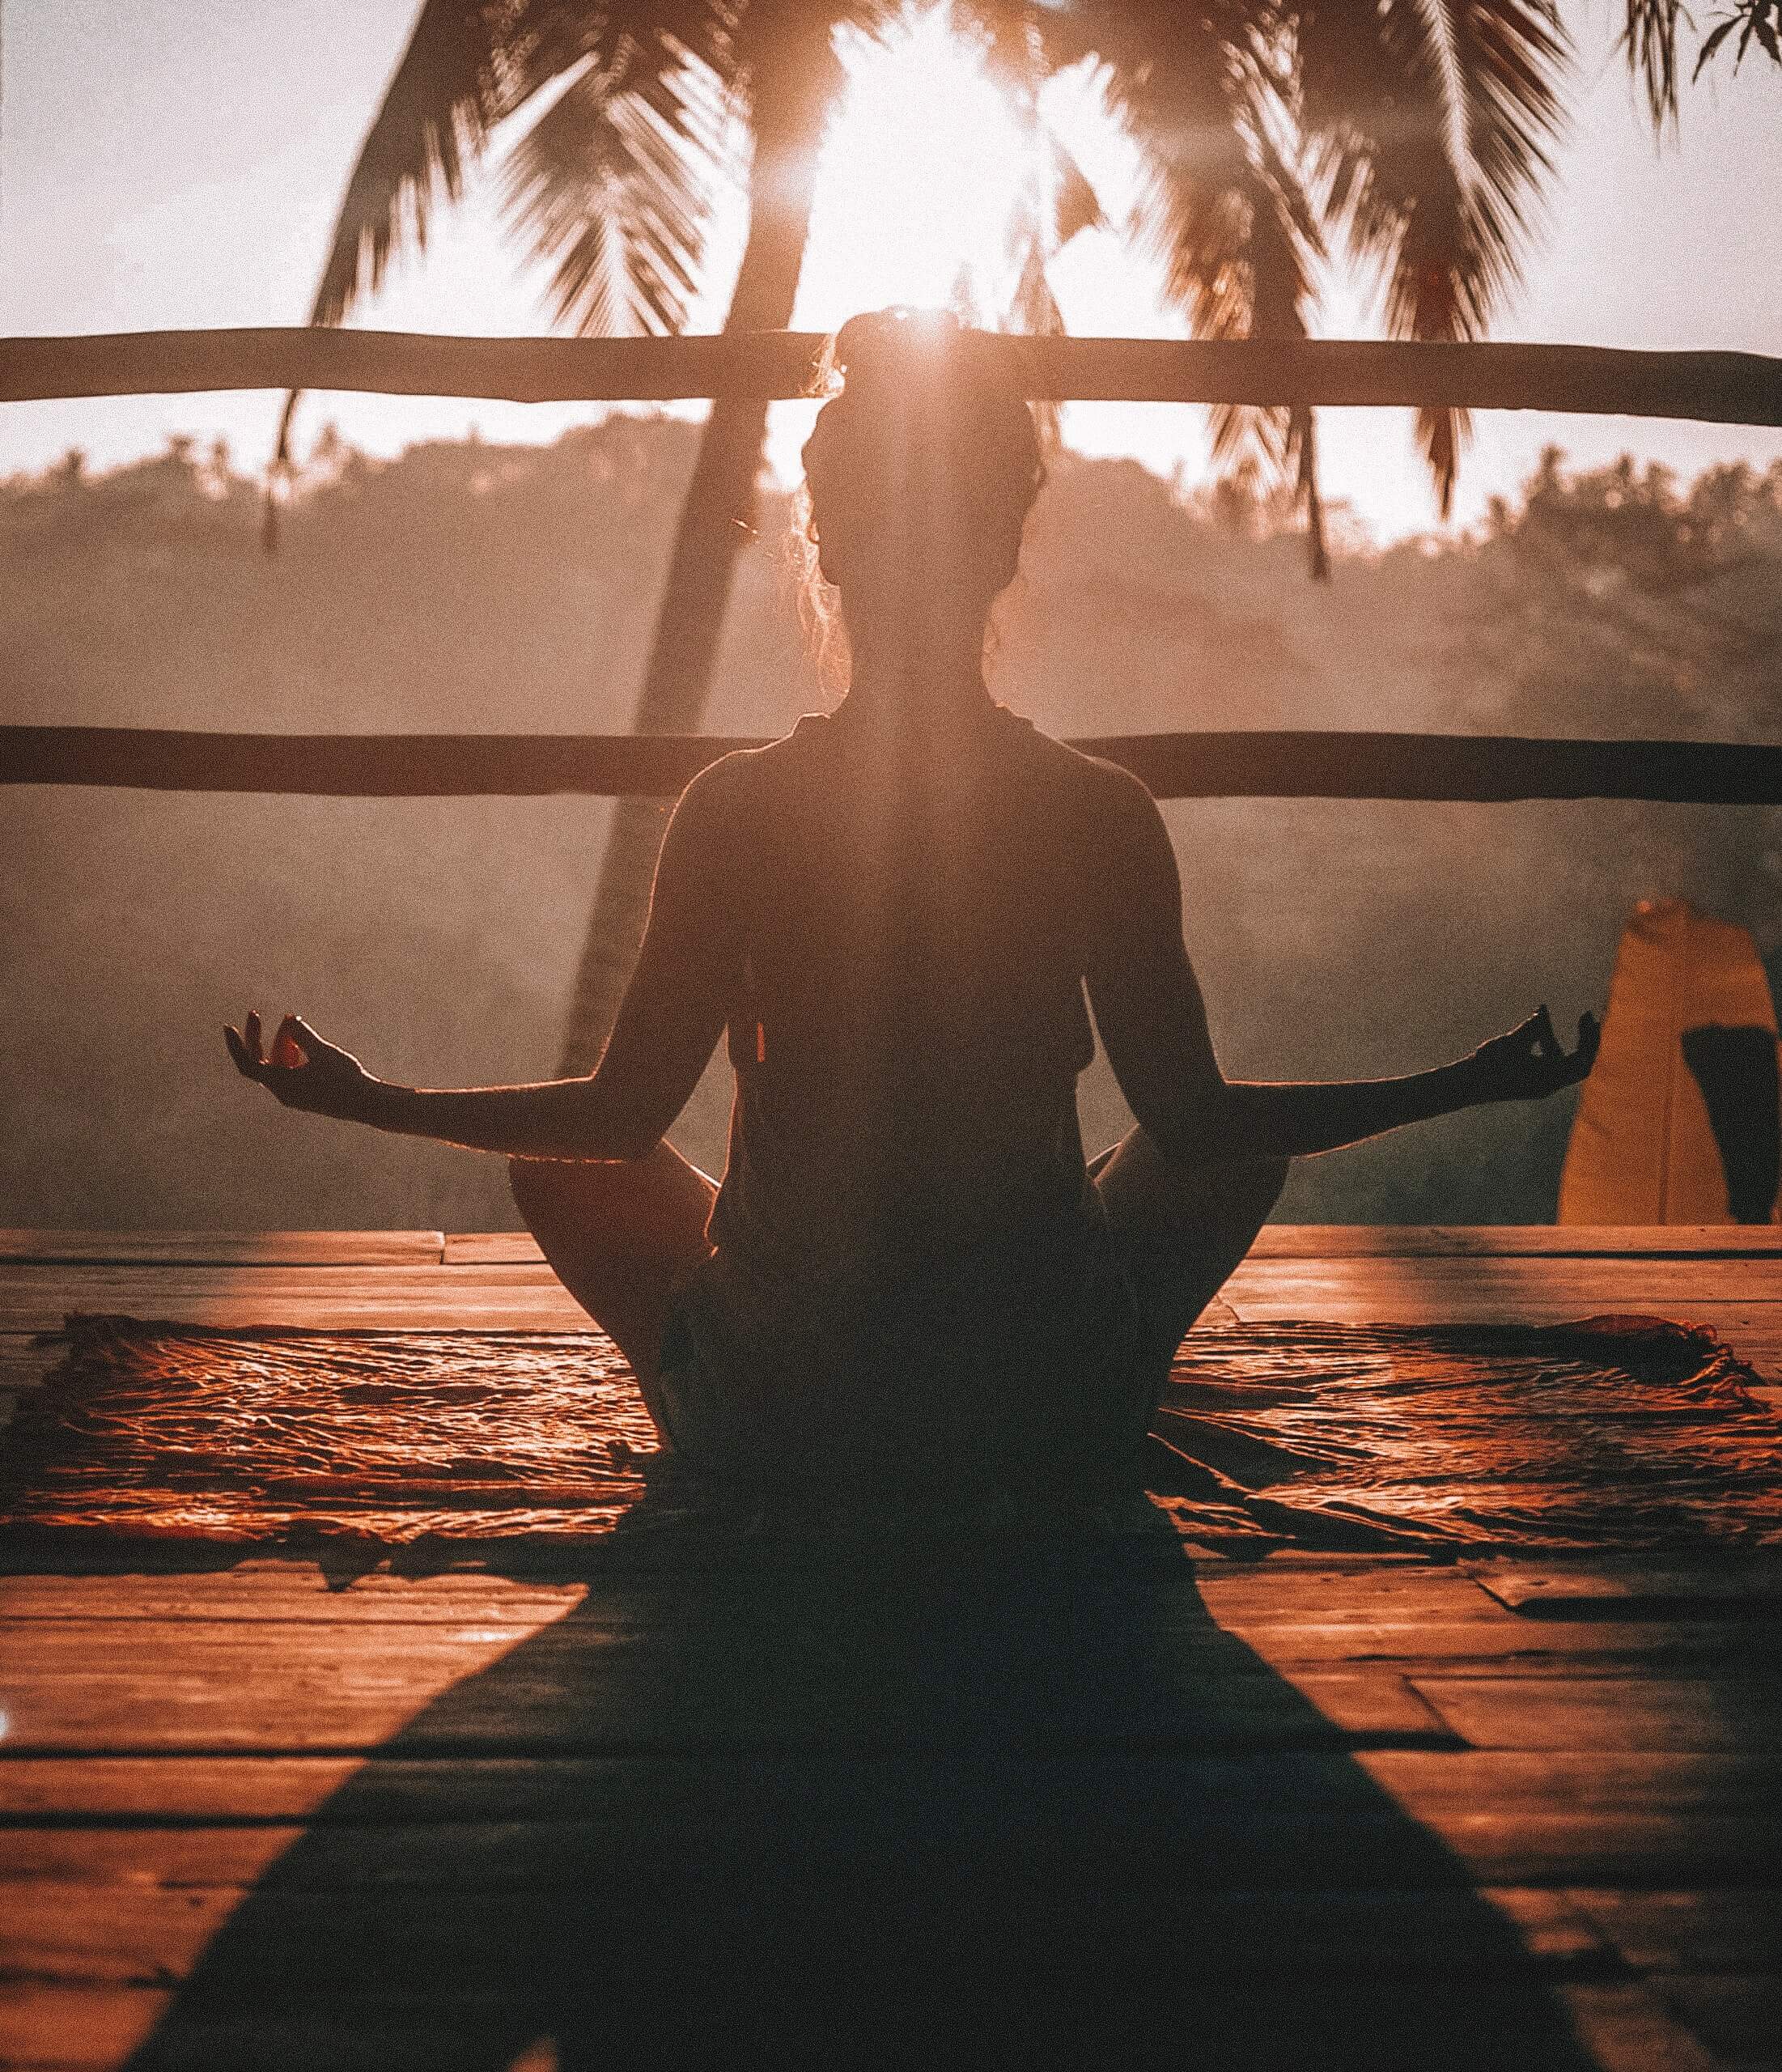 Sur une terrasse en bois, une jeune femme de dos en position assise de médiation lors du coucher de soleil devant un palmier